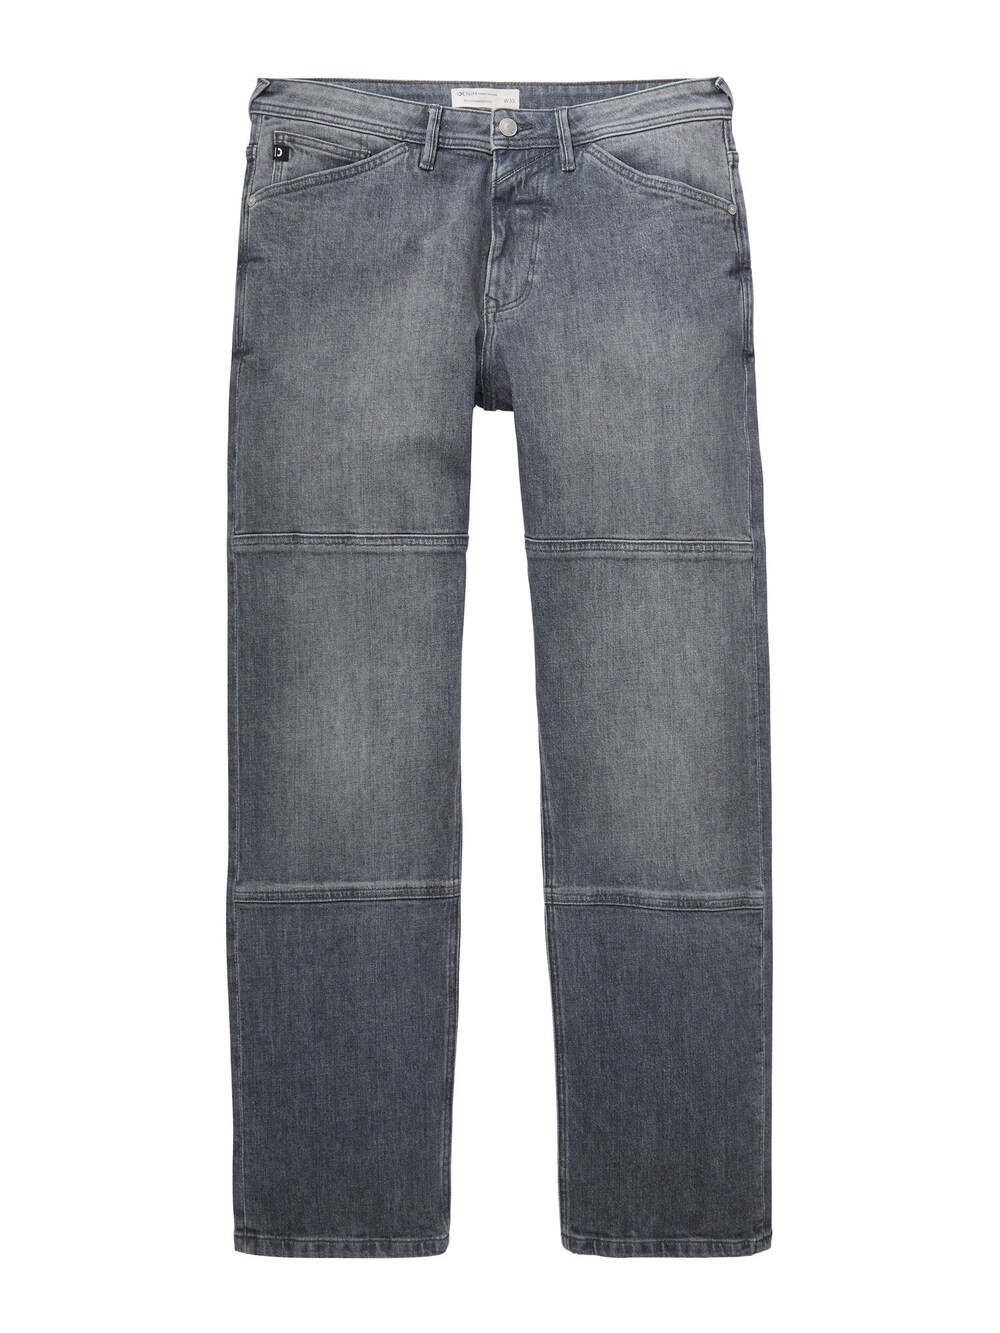 Обычные джинсы TOM TAILOR DENIM, серый джинсы серые прямые tom tailor denim серый